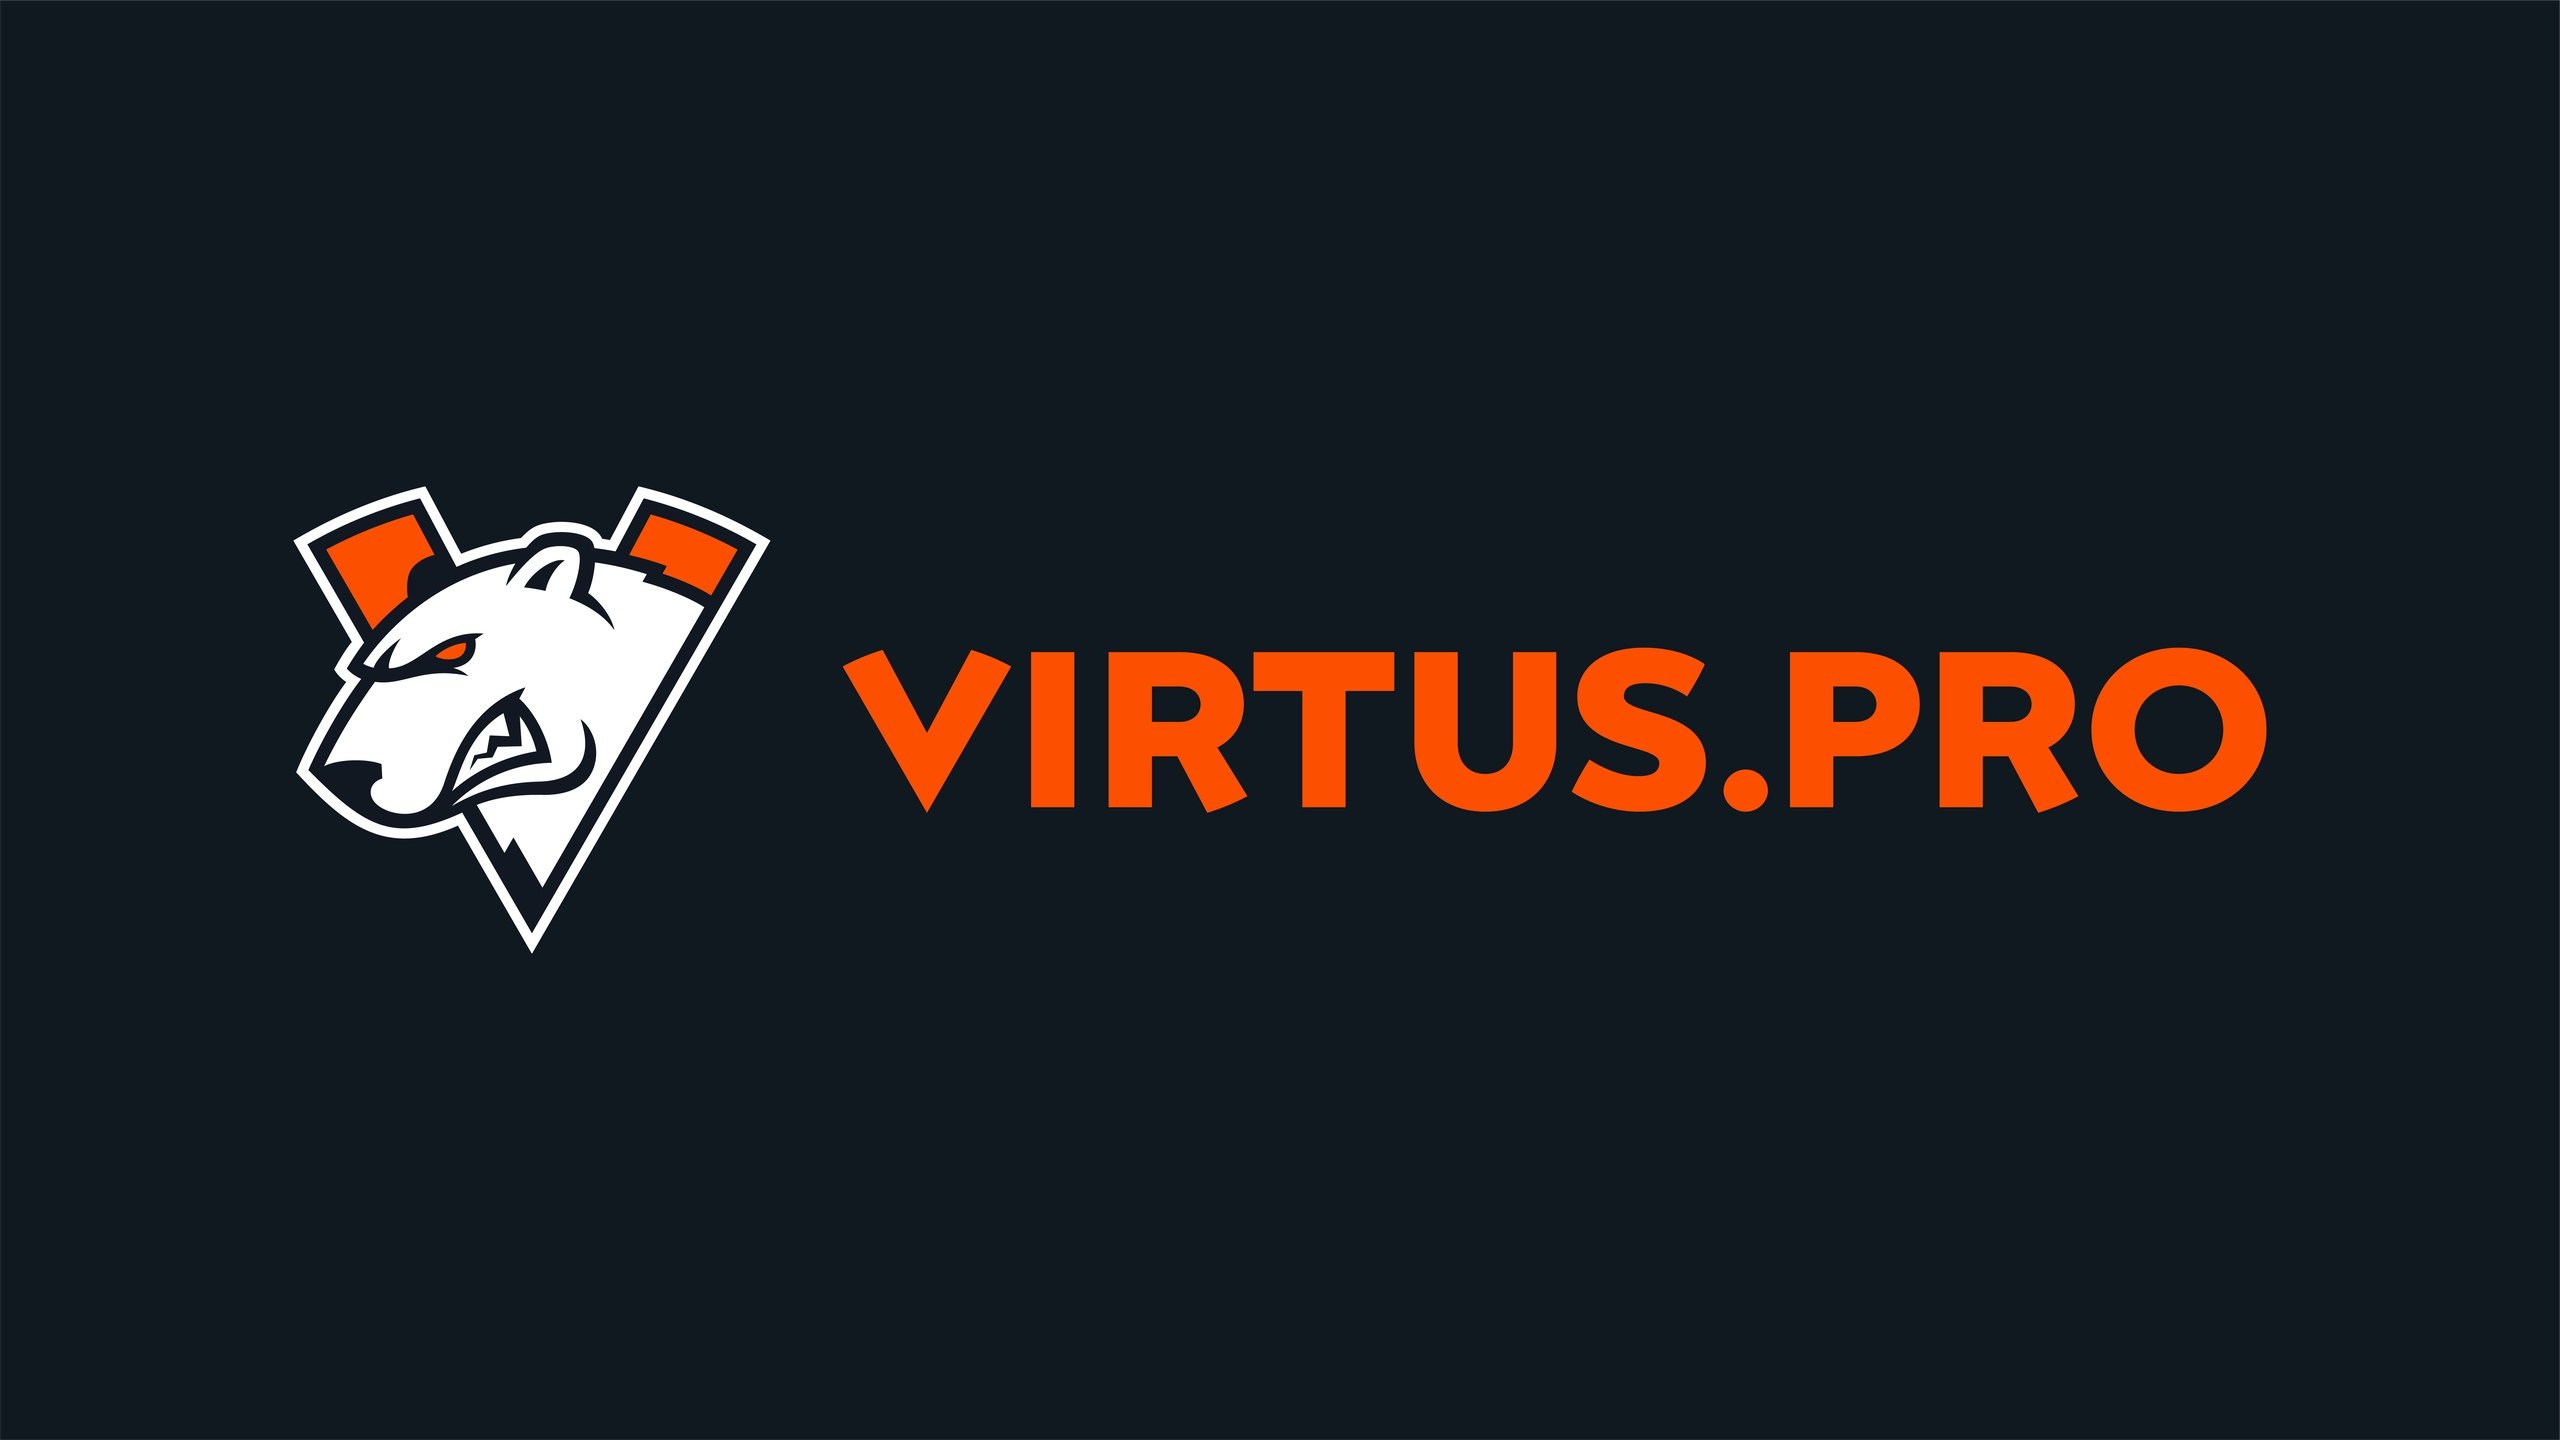 Virtus.pro разгромила Team Spirit в рамках DPC 2021/22 S3 для СНГ